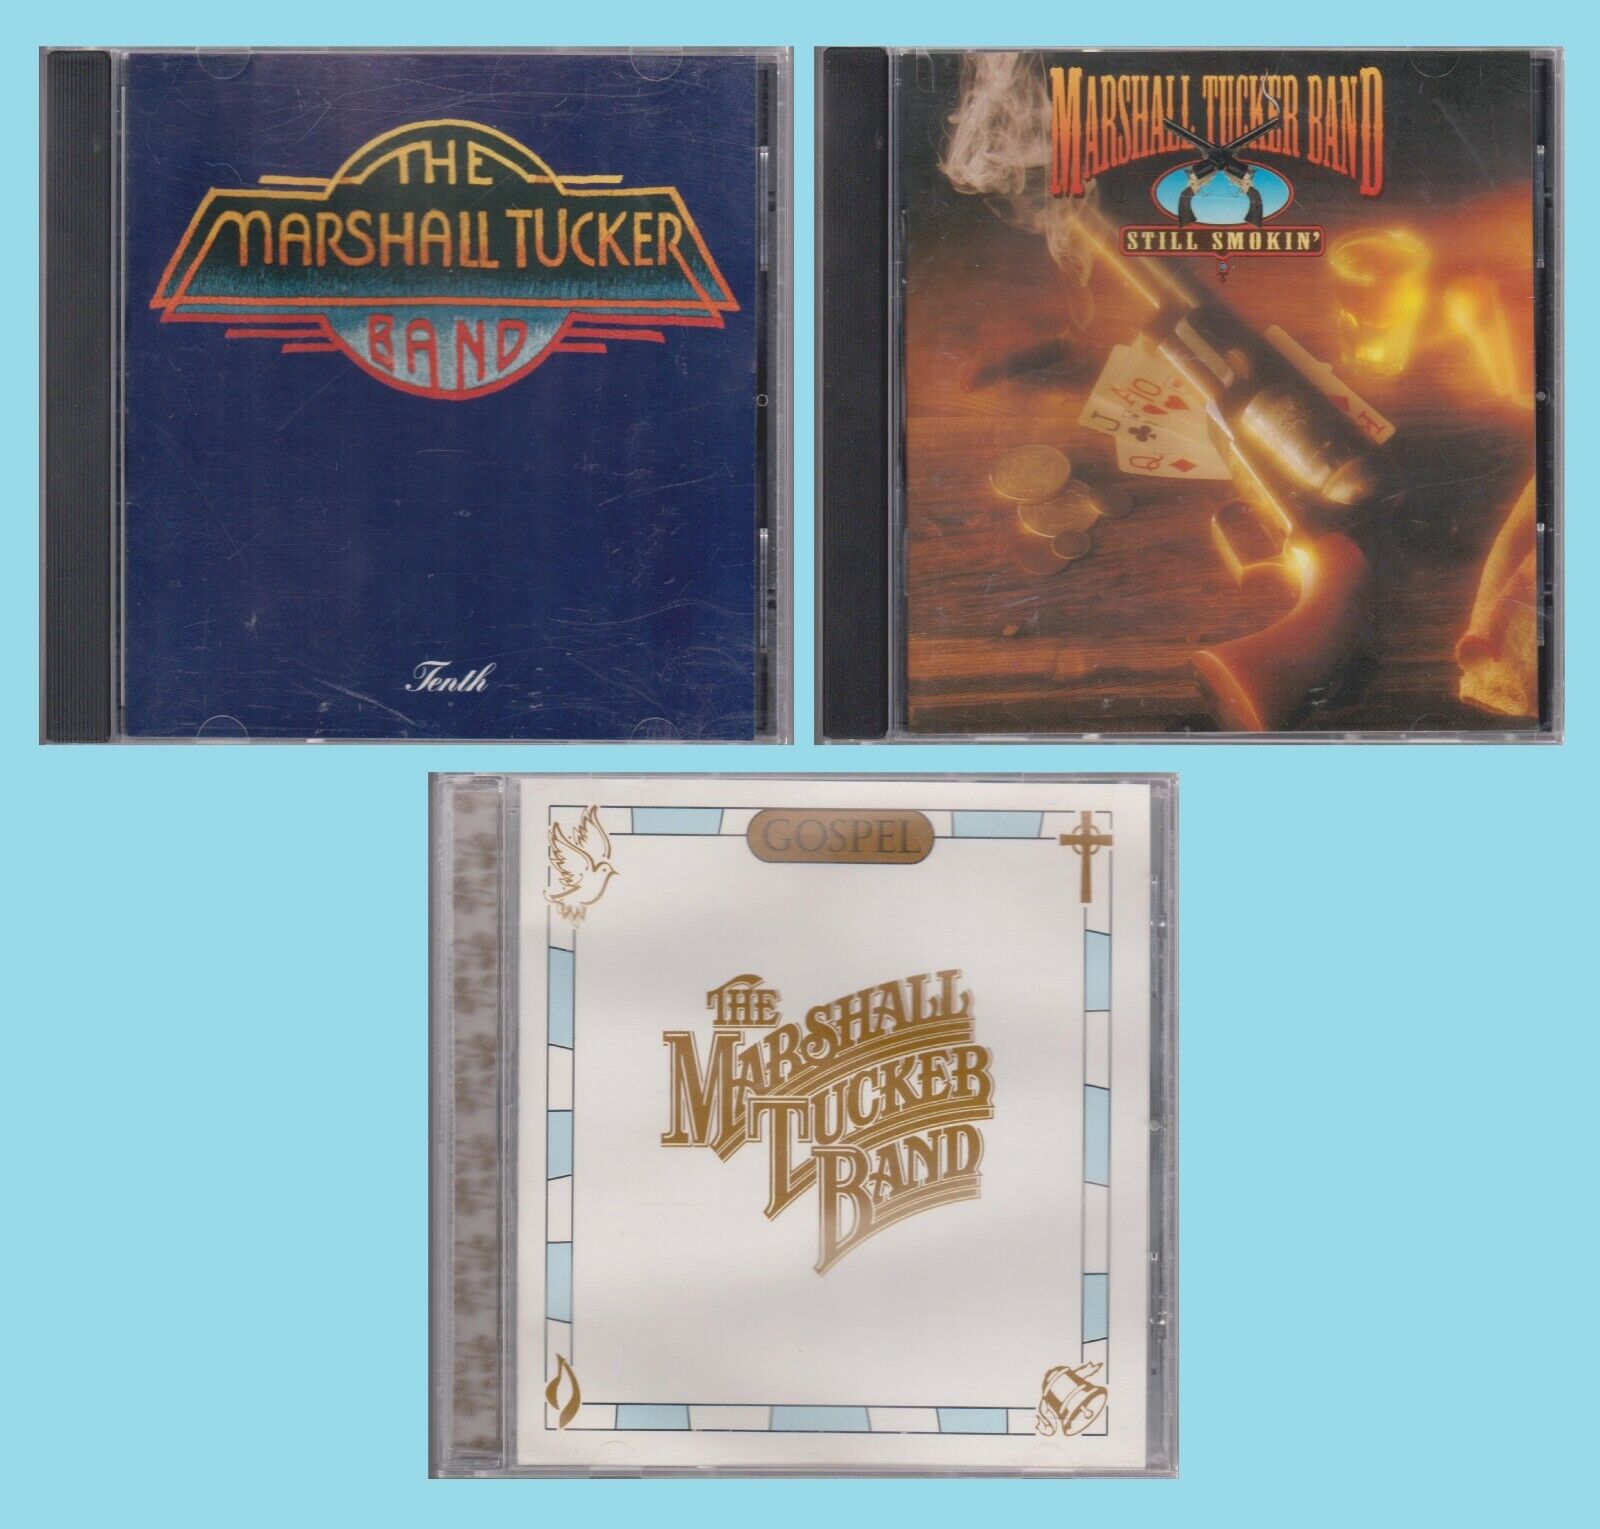 MARSHALL TUCKER BAND Tenth Still Smokin' & Gospel 3 CD Lot Classic Southern Rock